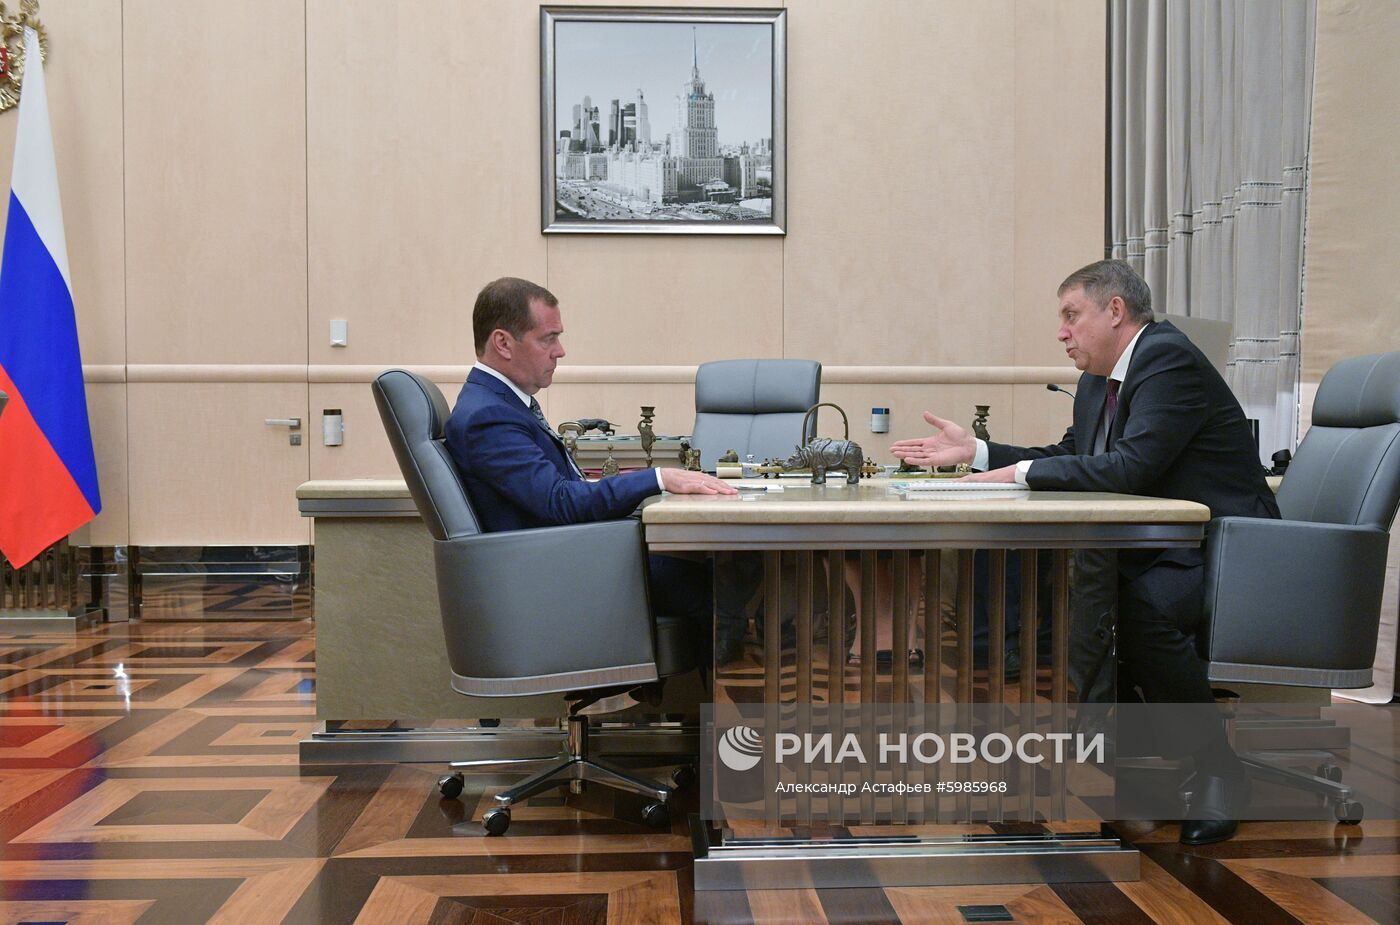 Премьер-министр РФ Д. Медведев встретился с губернатором Брянской области А. Богомазом